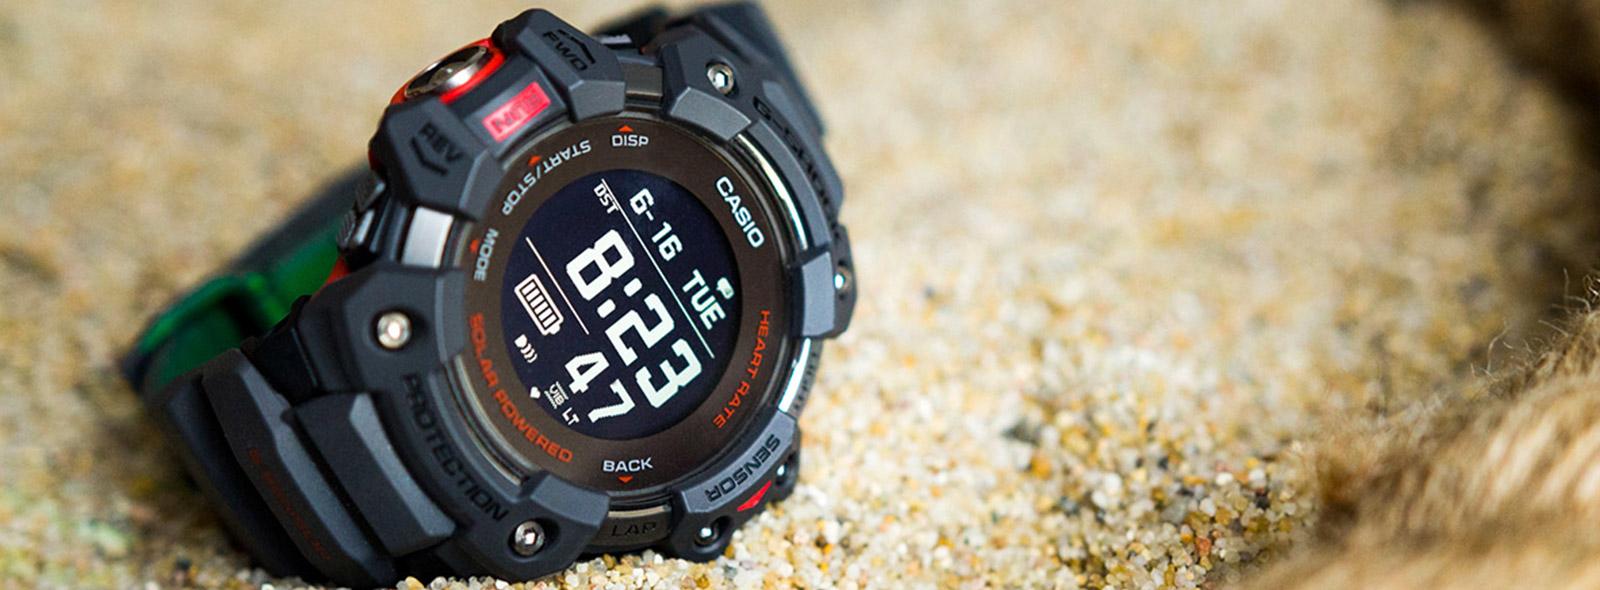 Recenzja Casio G-SHOCK GBD-H1000 - smartwatch czy zegarek? | Zegarownia.pl  Blog